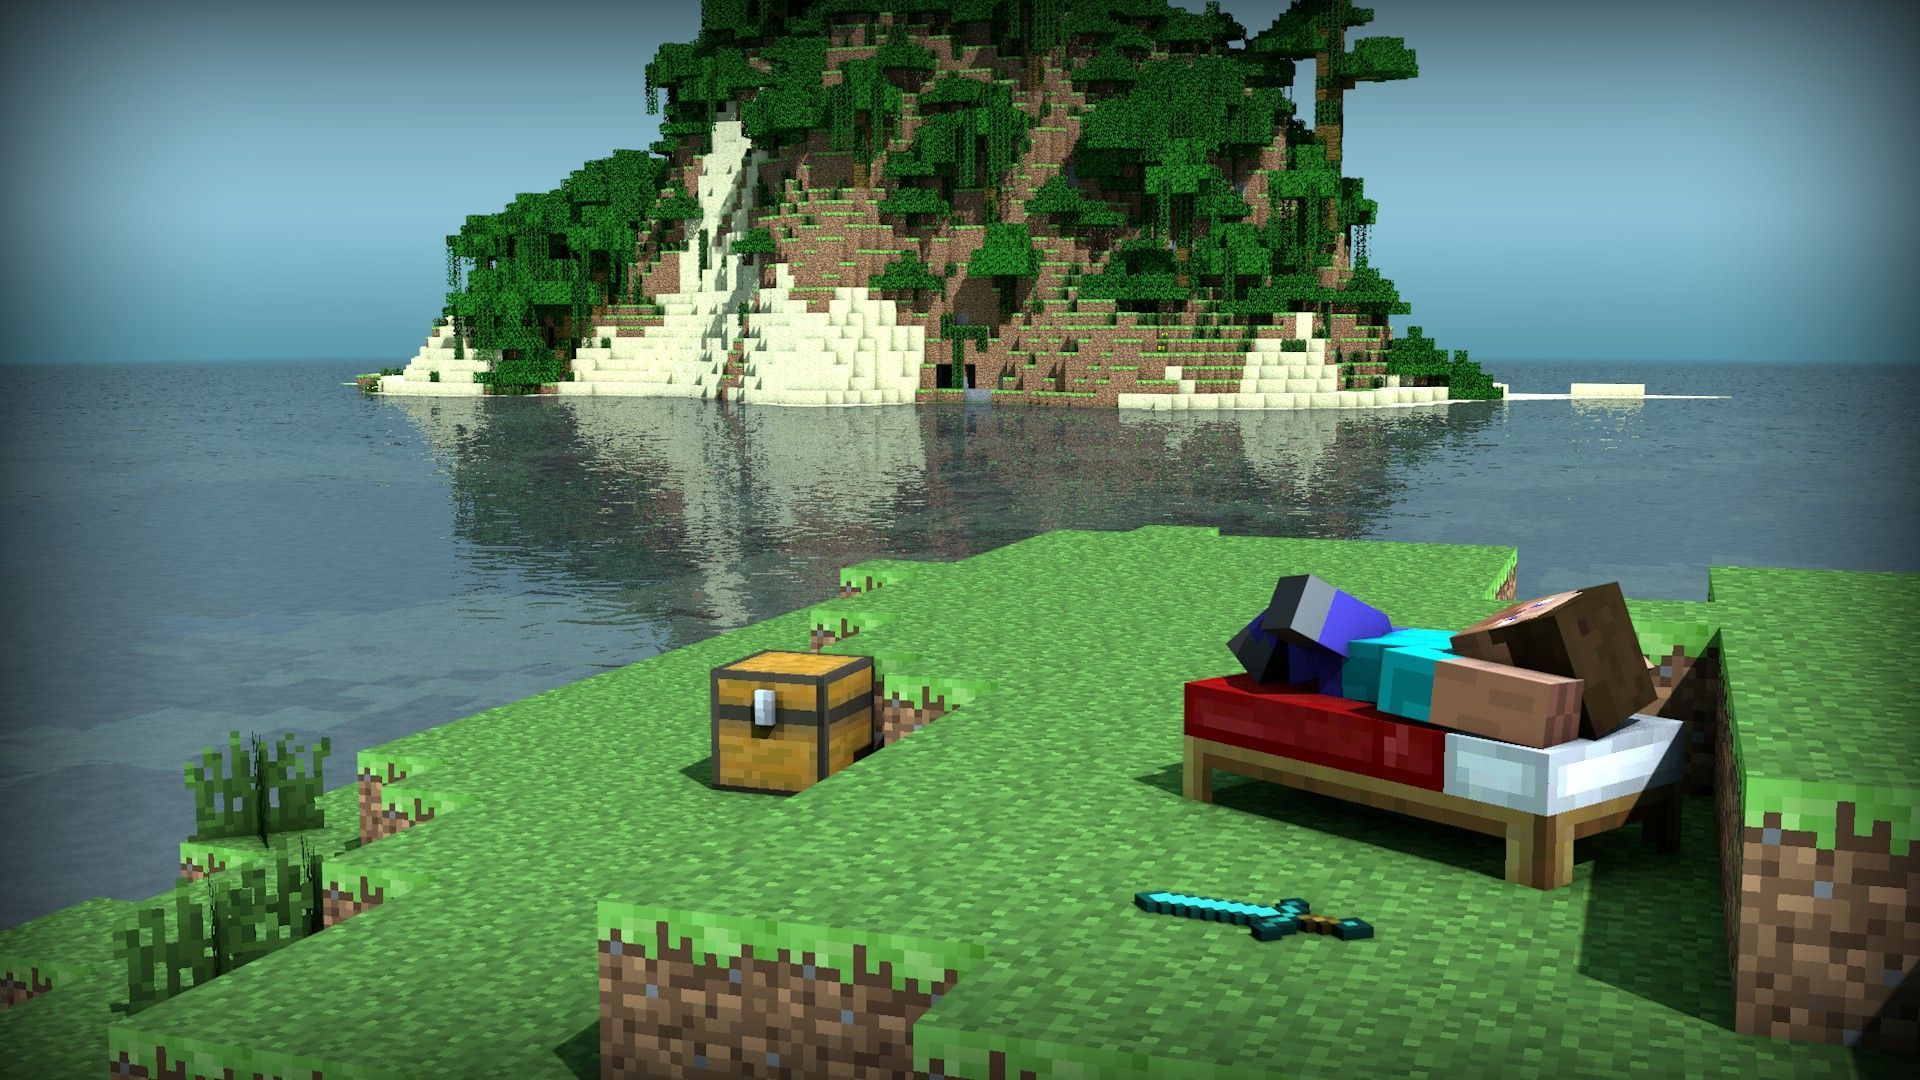 Minecraft Landscape HD Wallpaper | 1920x1080 | ID:40540